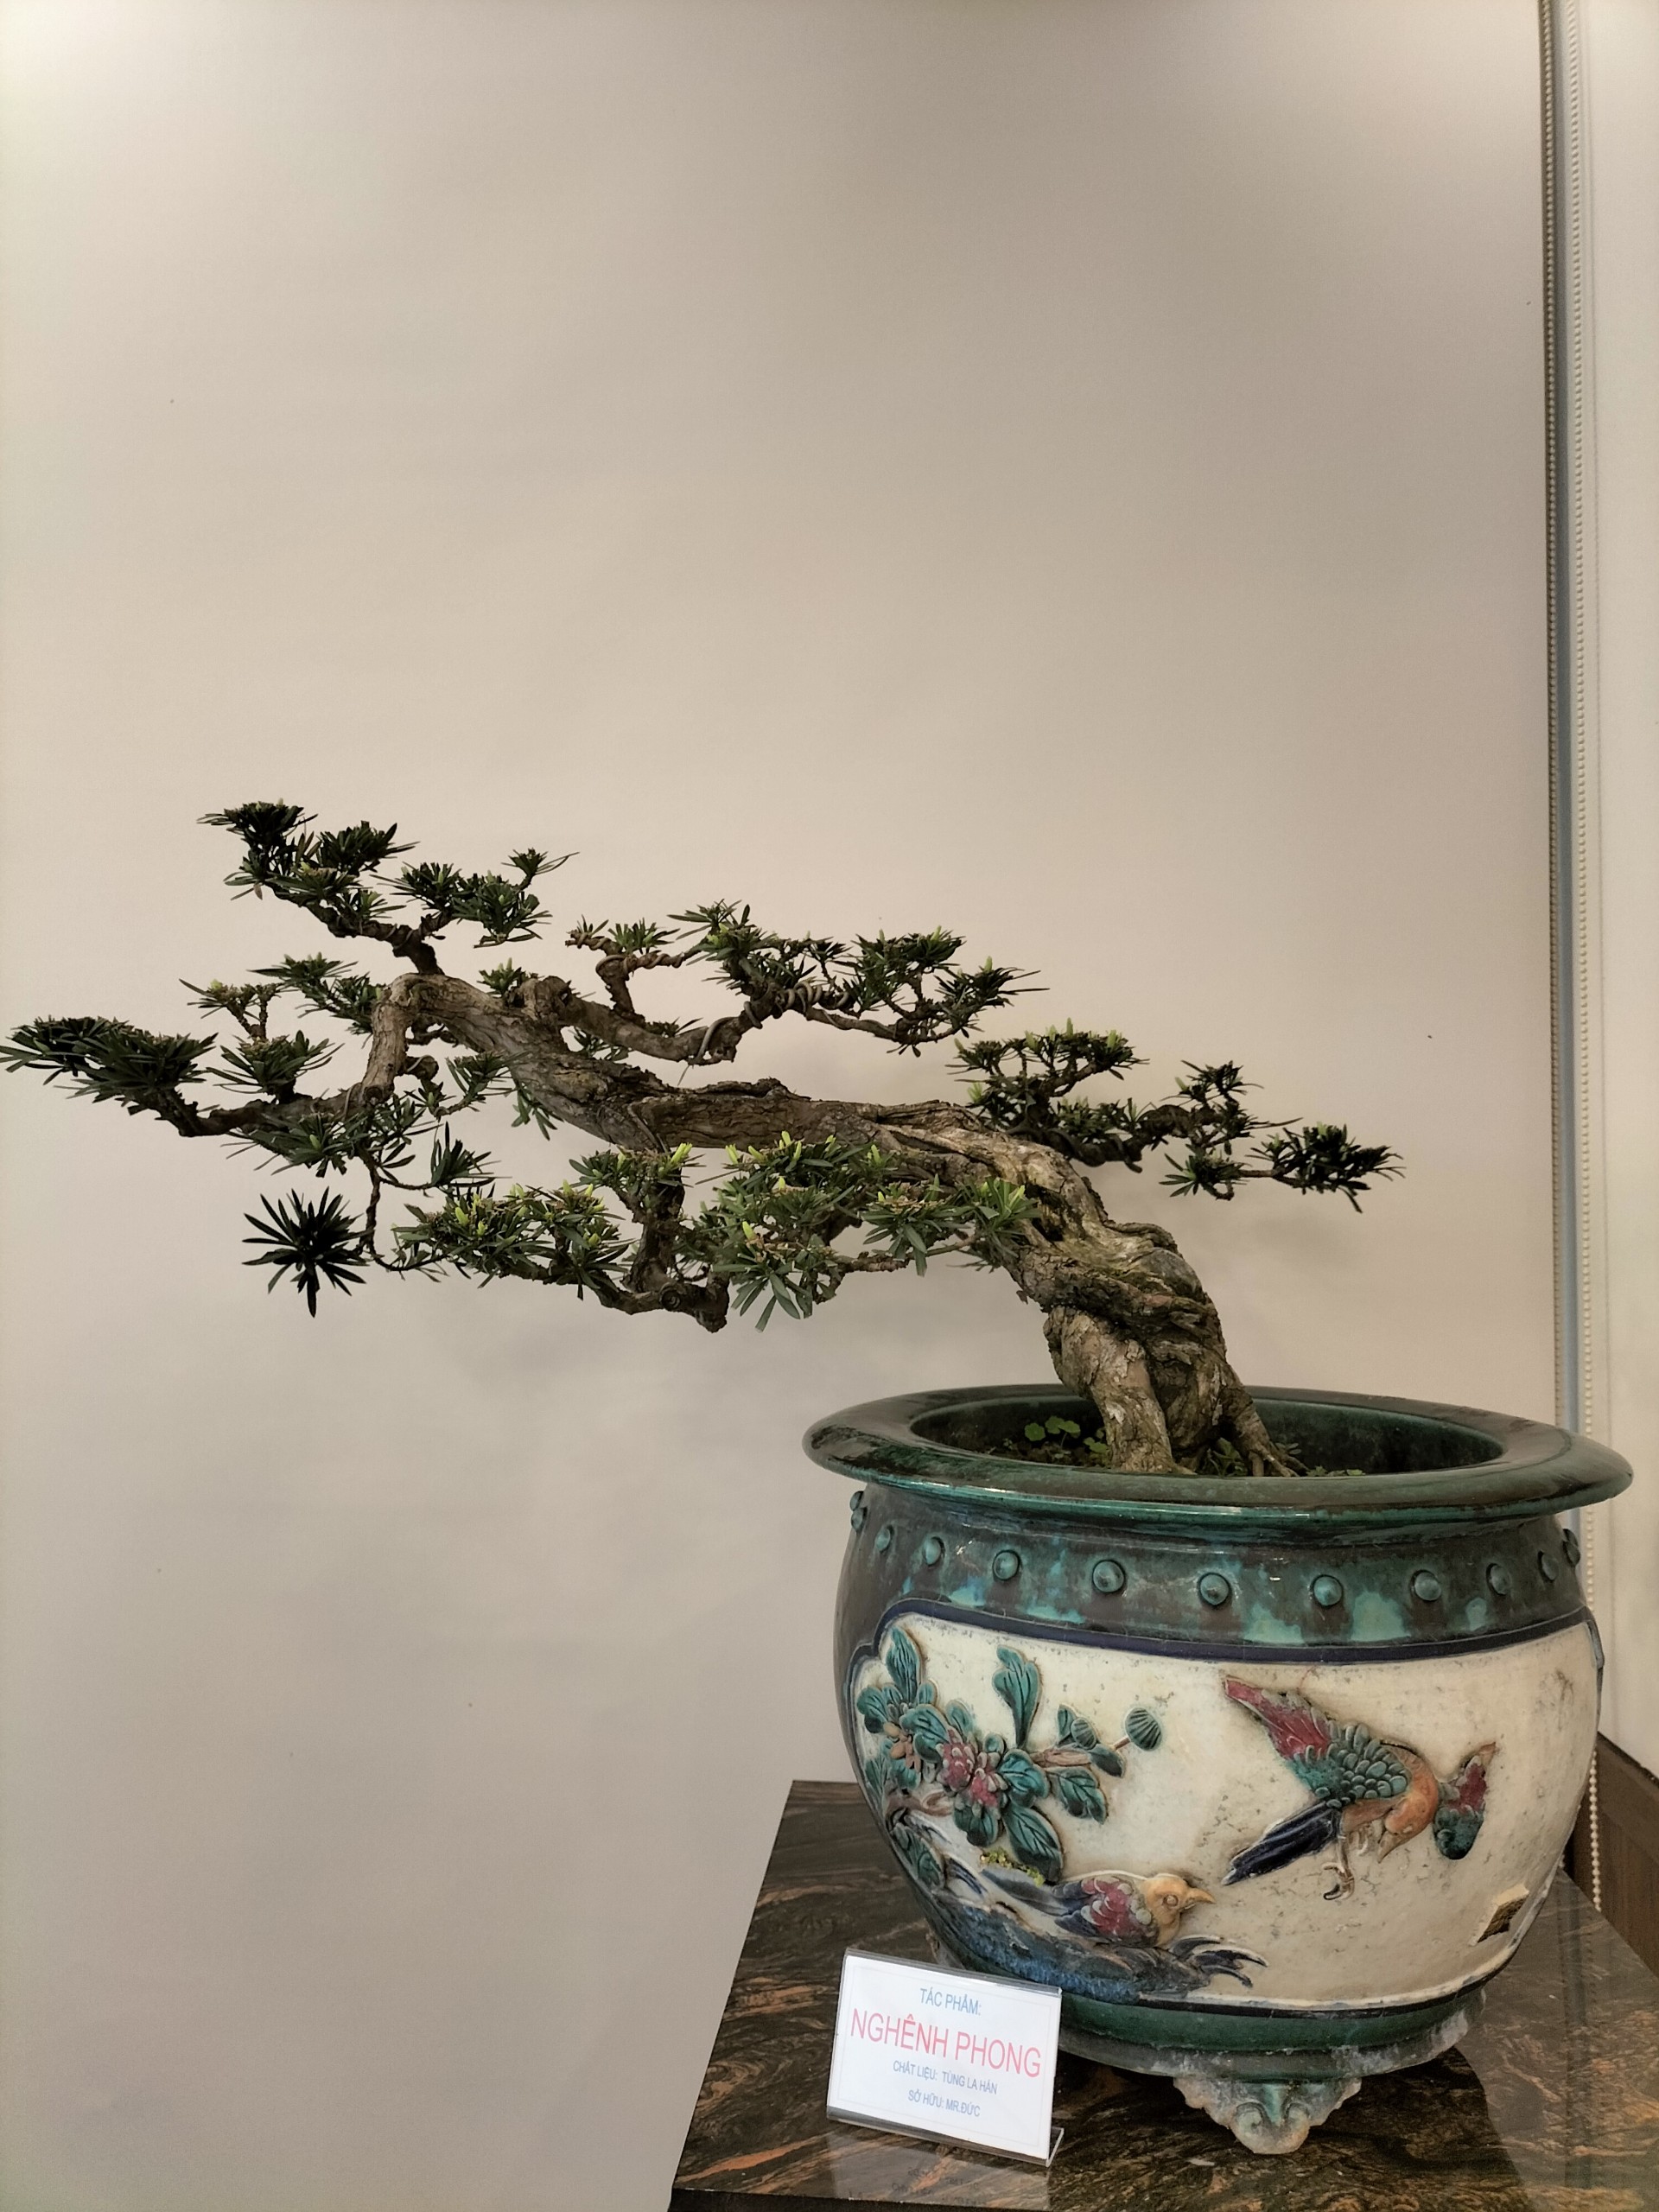 Cực phẩm cây cảnh bonsai hội tụ 4 tiêu chí &quot;Cổ, kỳ, mỹ, văn&quot;, hệ chơi cây nức nở &quot;đẹp hết nước chấm&quot; - Ảnh 2.